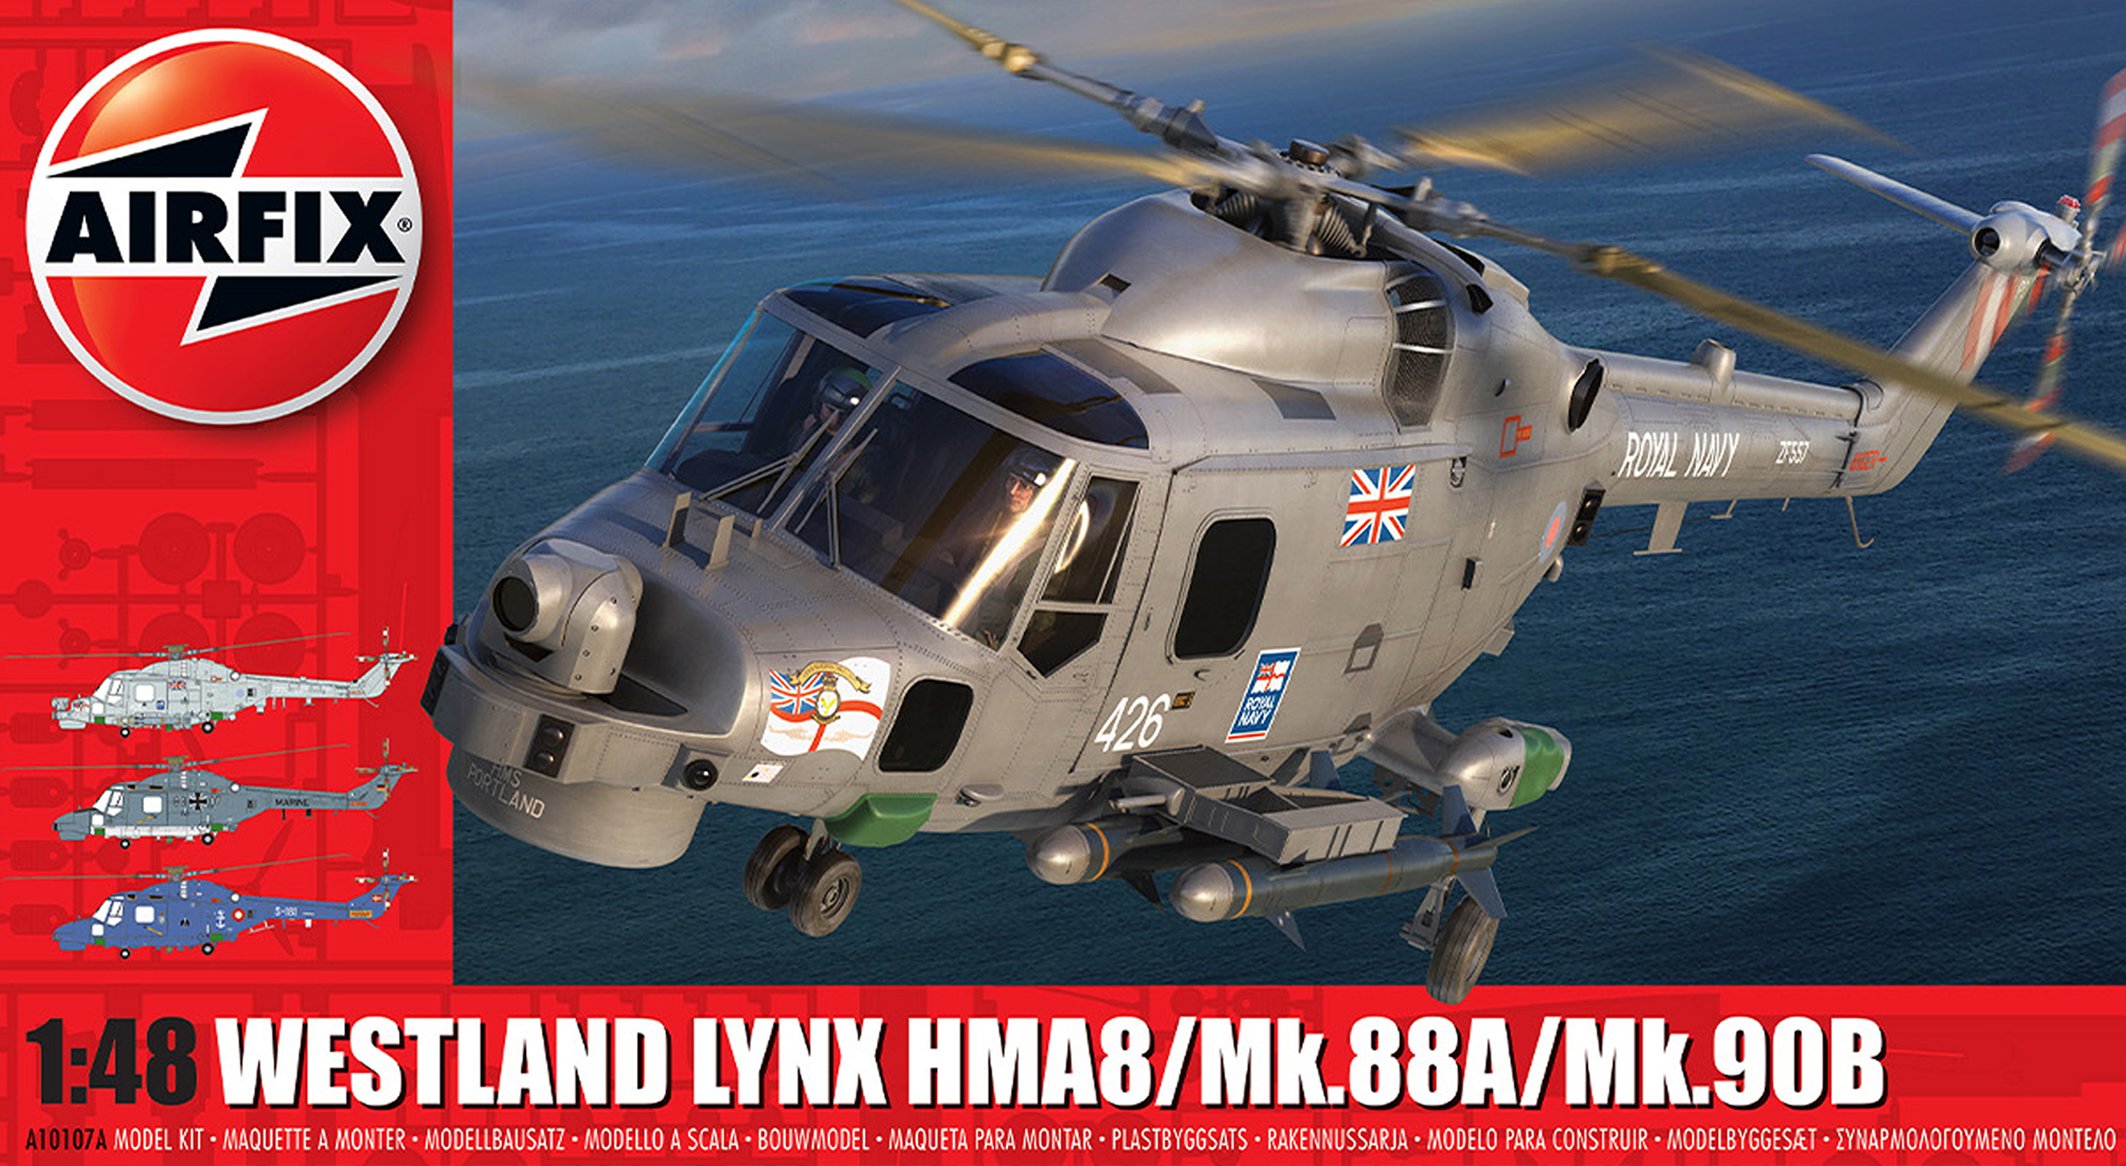 Airfix 1/48 Westland Lynx HMA.8/Mk.88A/Mk.90B